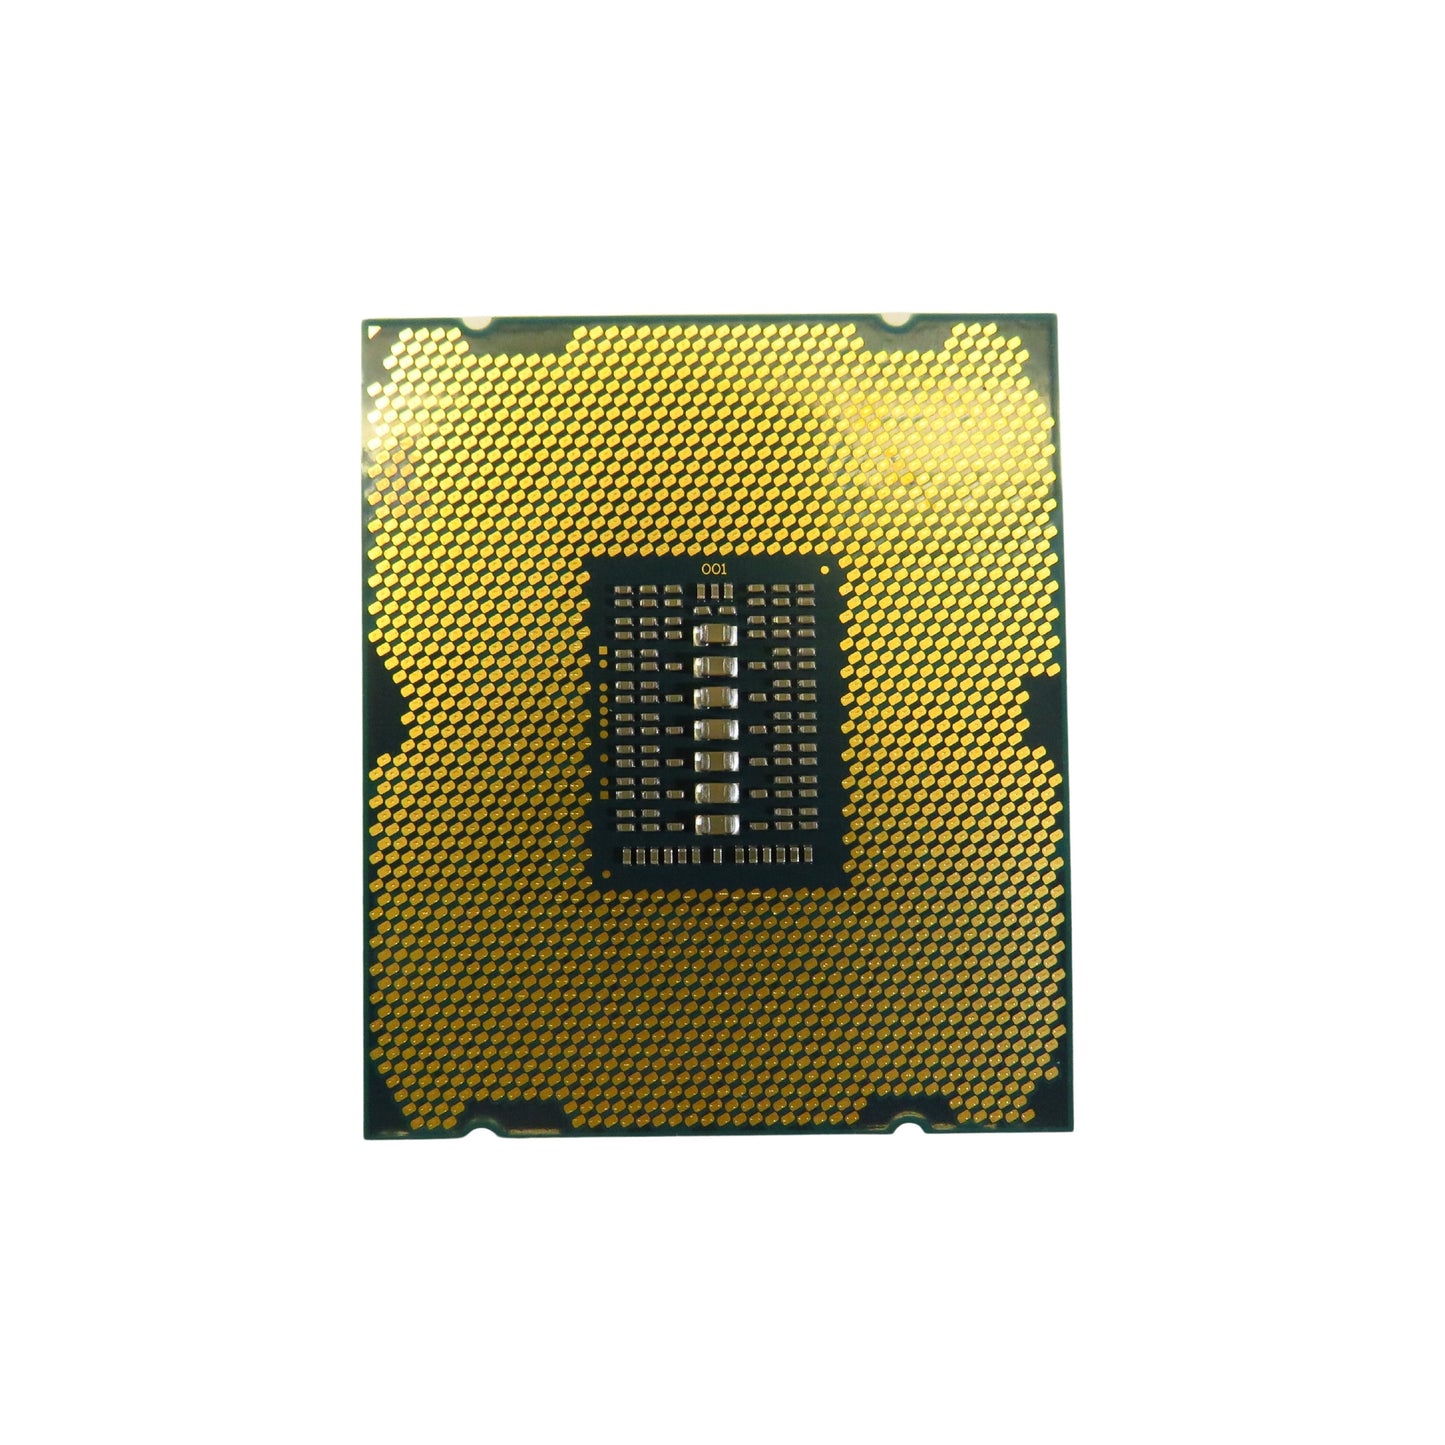 Intel SR1AD Xeon E5-4627V2 3.3GHz 8 Core FCLGA2011 Server CPU Processor (Refurbished)